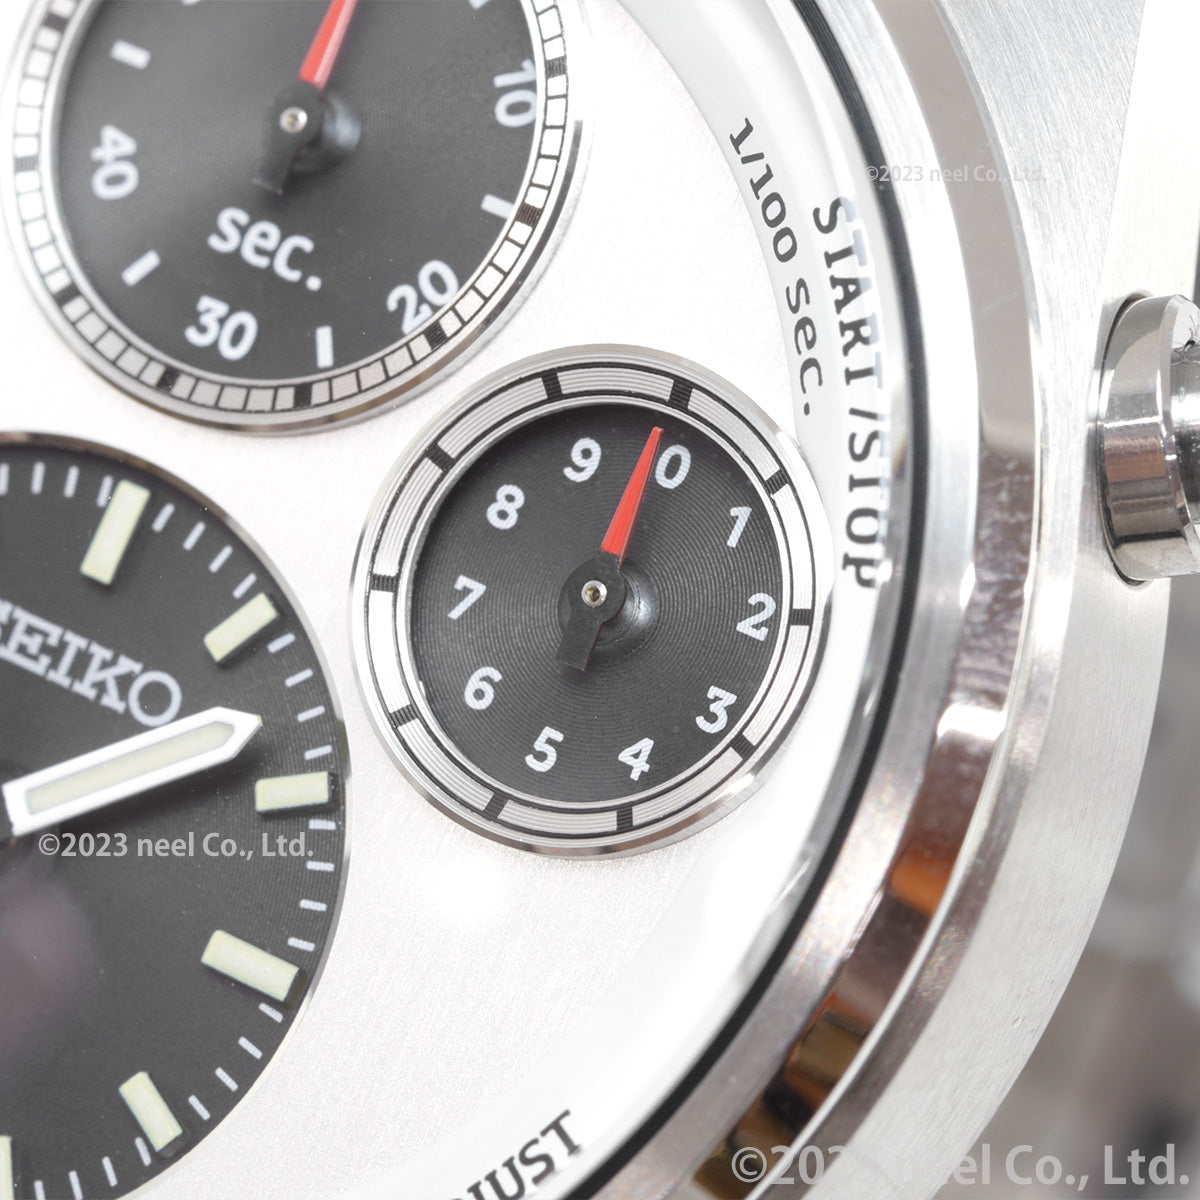 セイコー プロスペックス SBER009 スピードタイマー ソーラー クロノグラフ セイコー腕時計110周年 限定 腕時計 メンズ SEIKO PROSPEX SPEEDTIMER